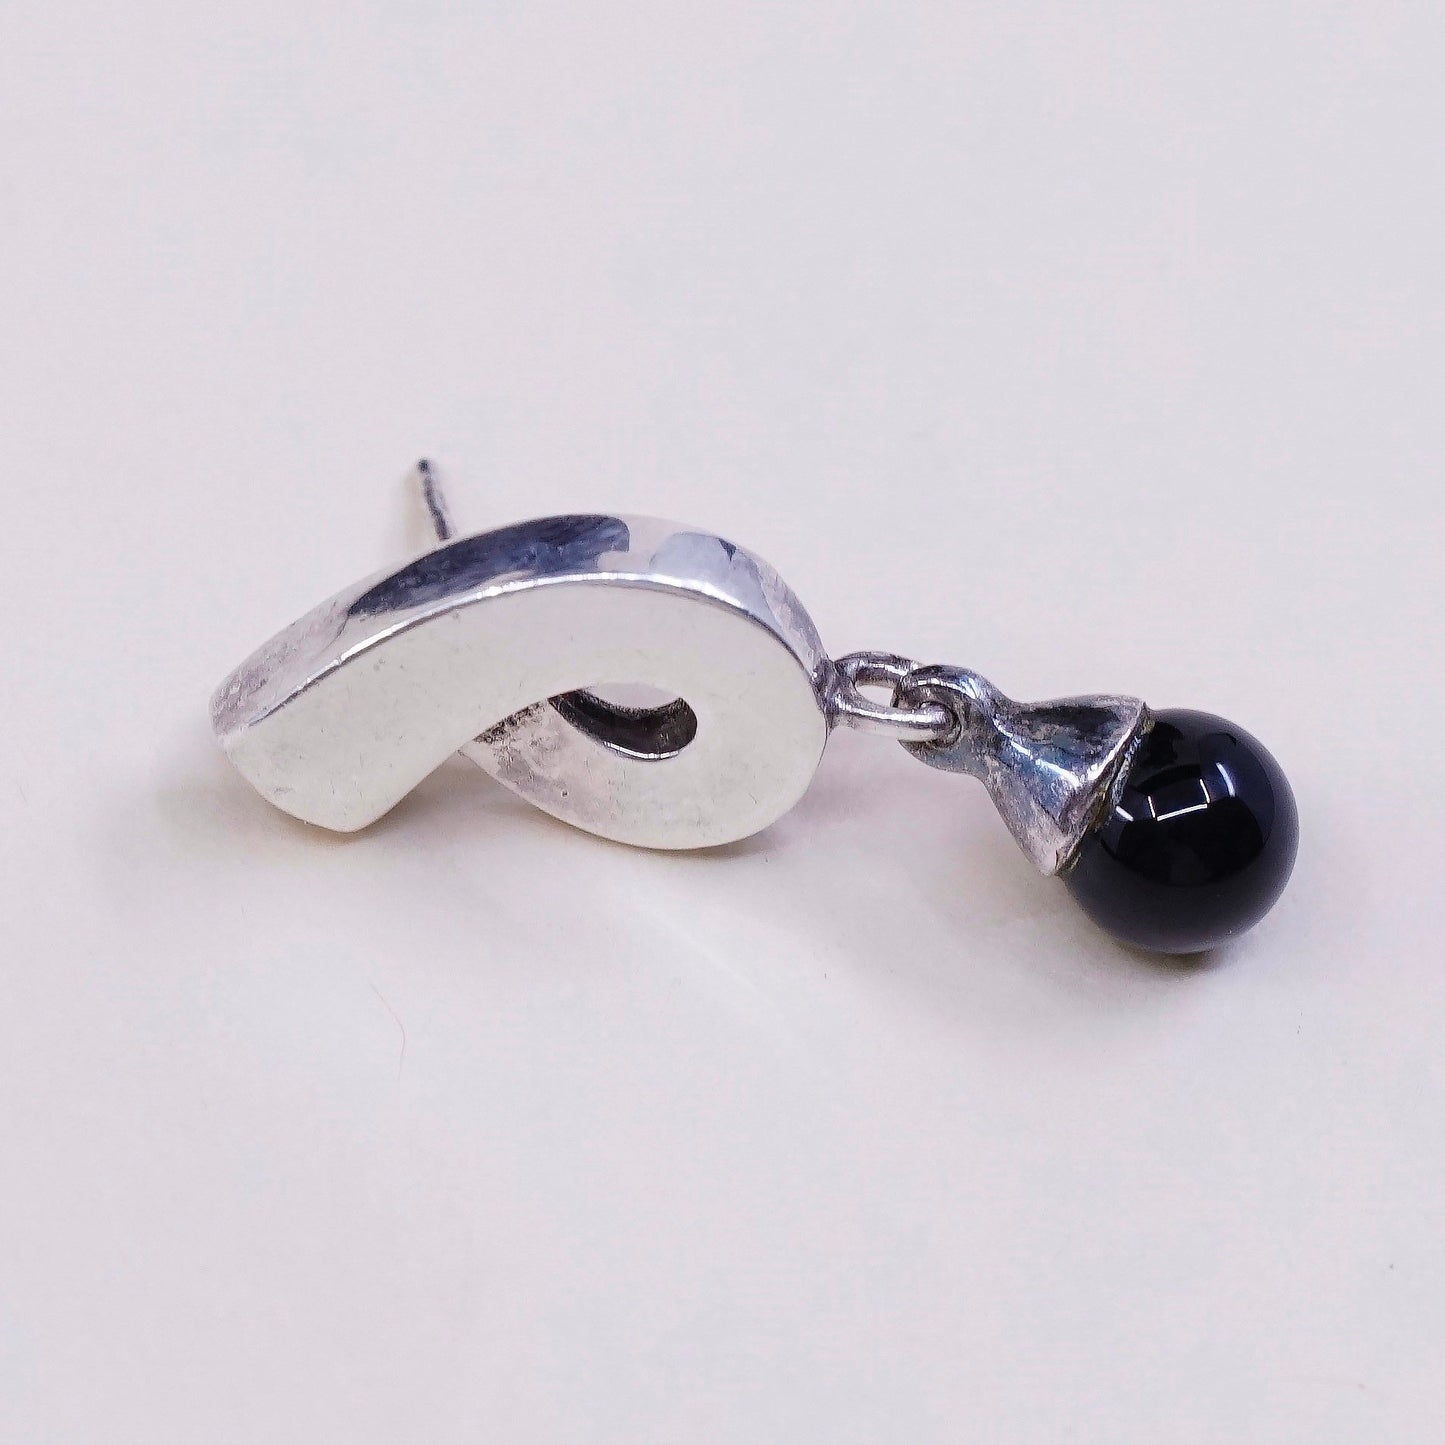 vtg Sterling silver handmade earrings, 925 studs w/ obsidian beads